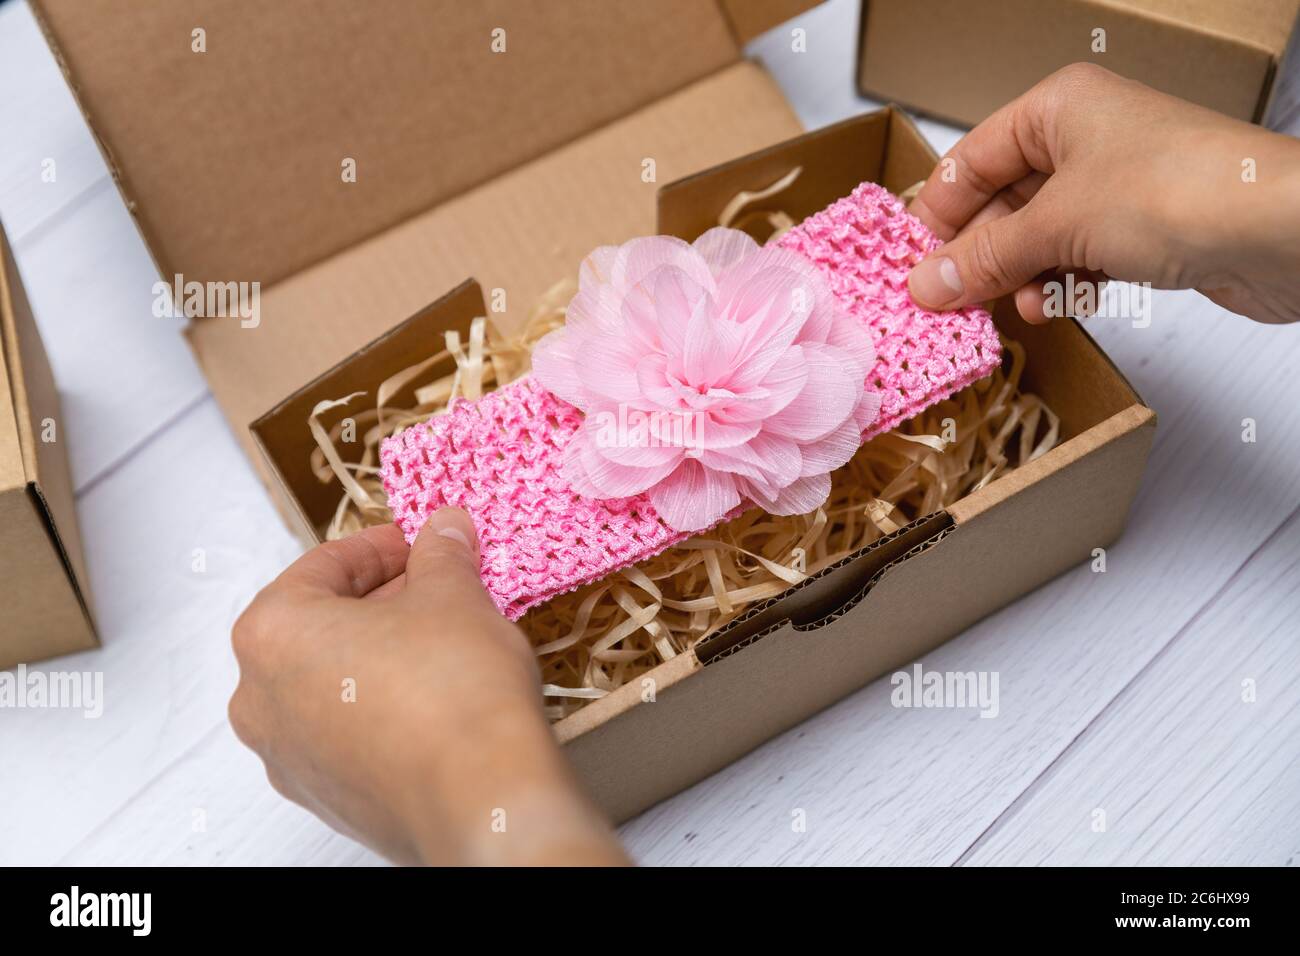 artigianato business - donna imballaggio fatto a mano baby floral archetto in scatola di cartone per la spedizione Foto Stock